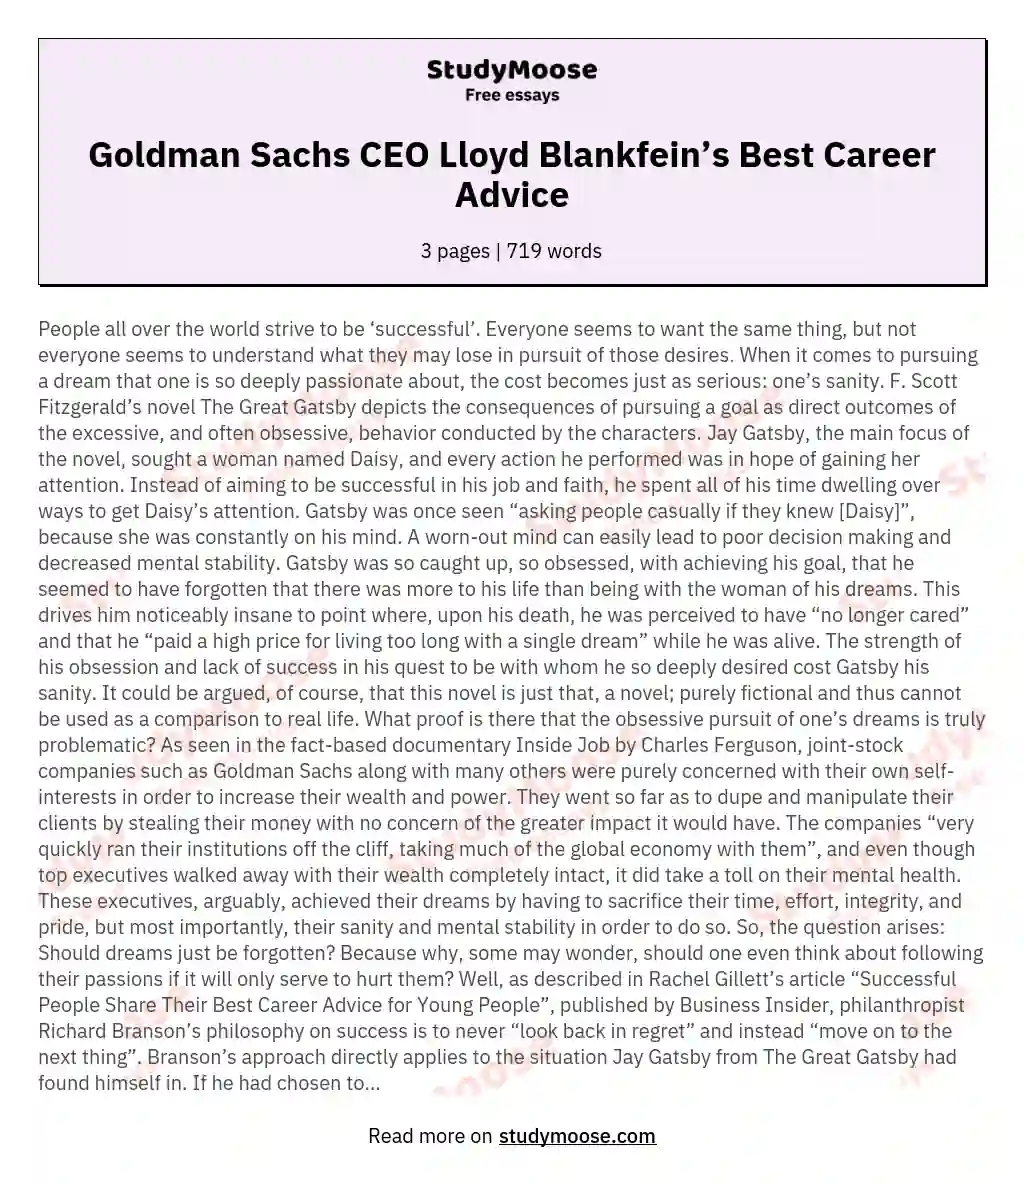 Goldman Sachs CEO Lloyd Blankfein’s Best Career Advice essay